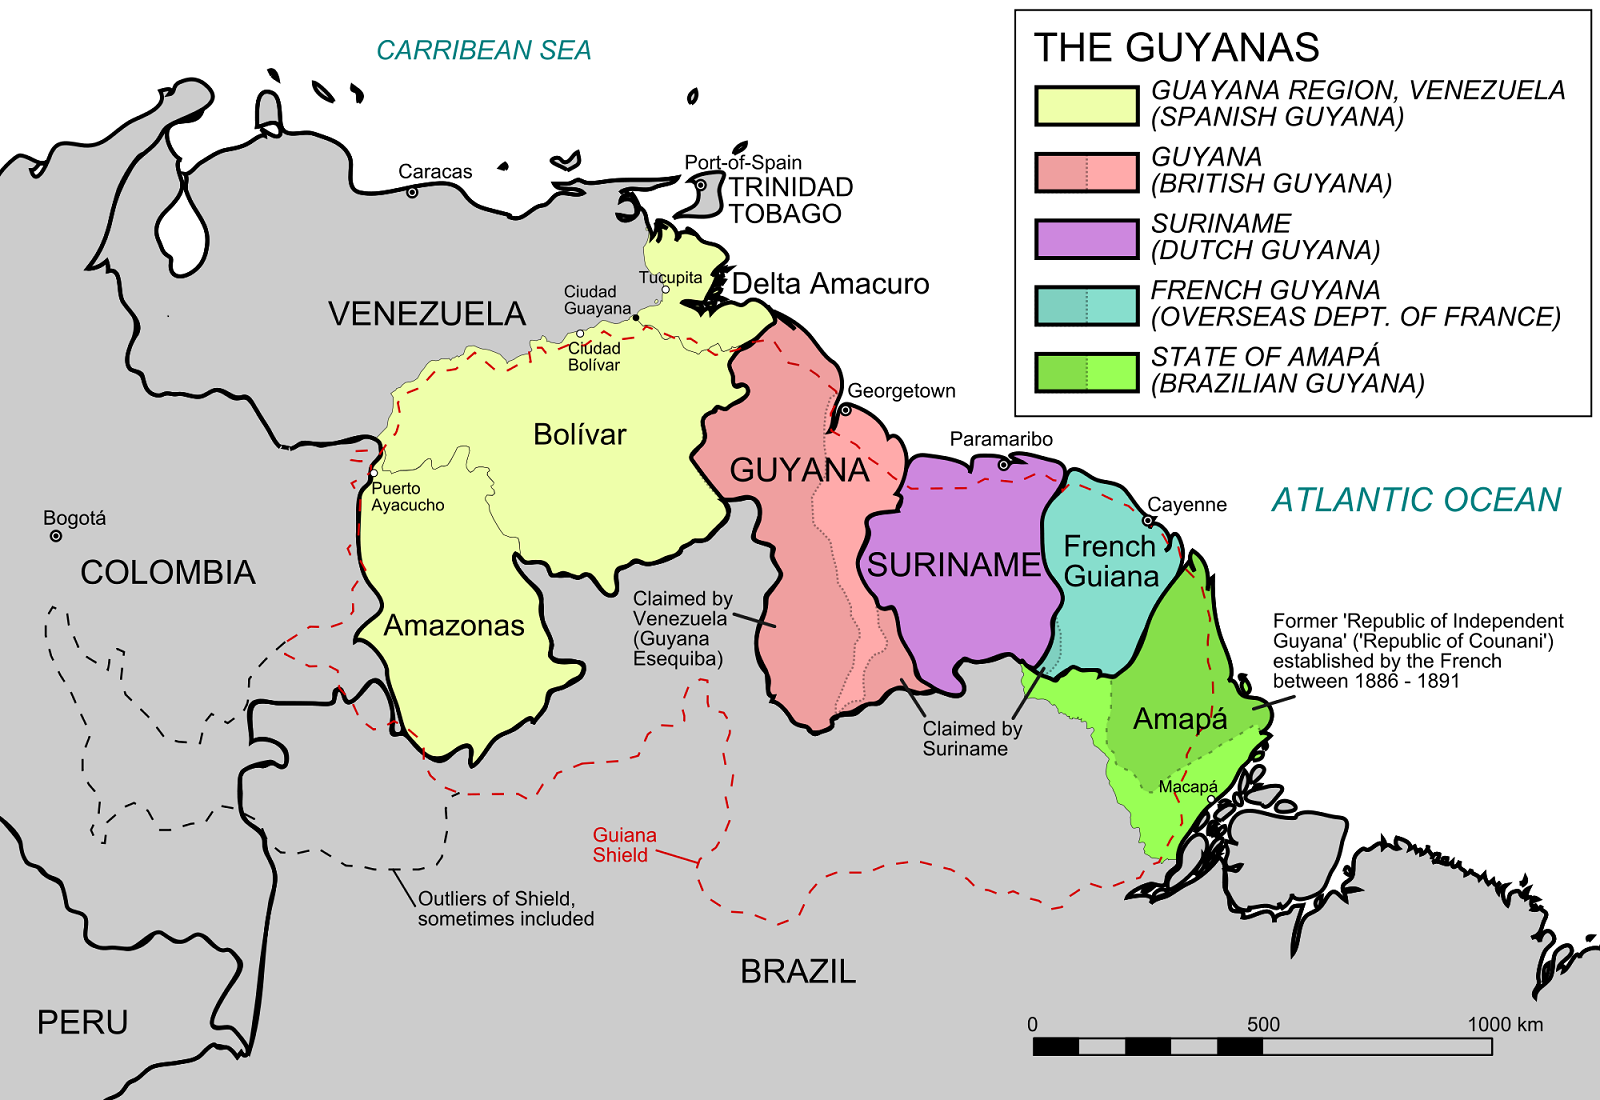 Francúzska Guyana, Surinam, Guyana, Trinidad a Tobago – cestovateľské rady, tipy a itinerár